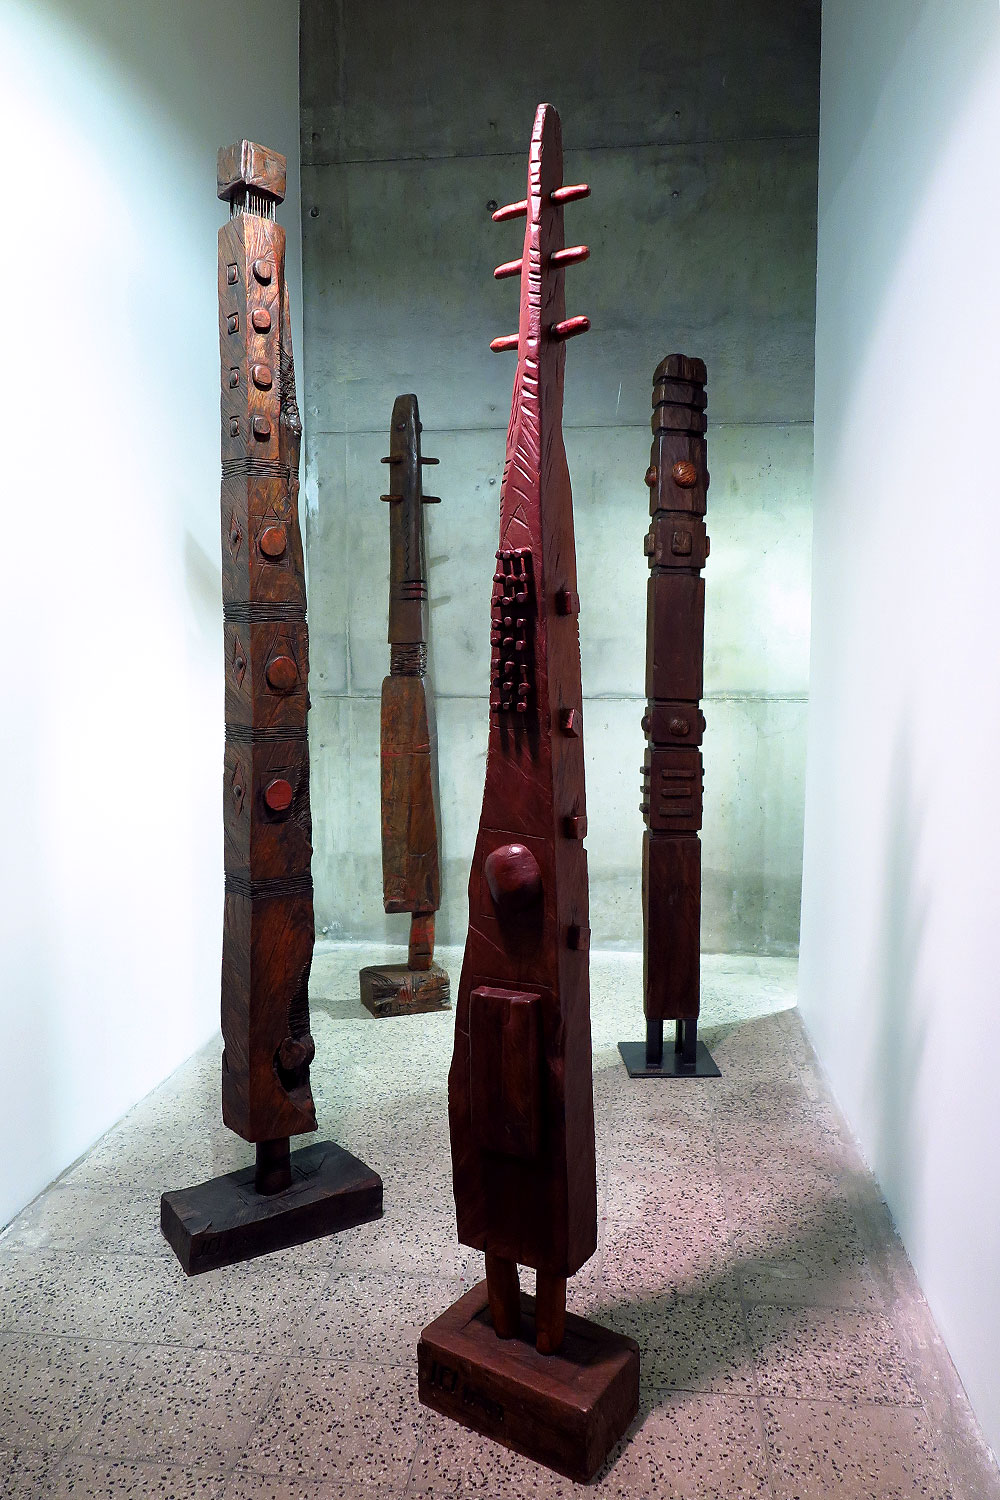 نمایشگاهی گروهی آثار ساخته شده با چوب در گالری پروژه های آران